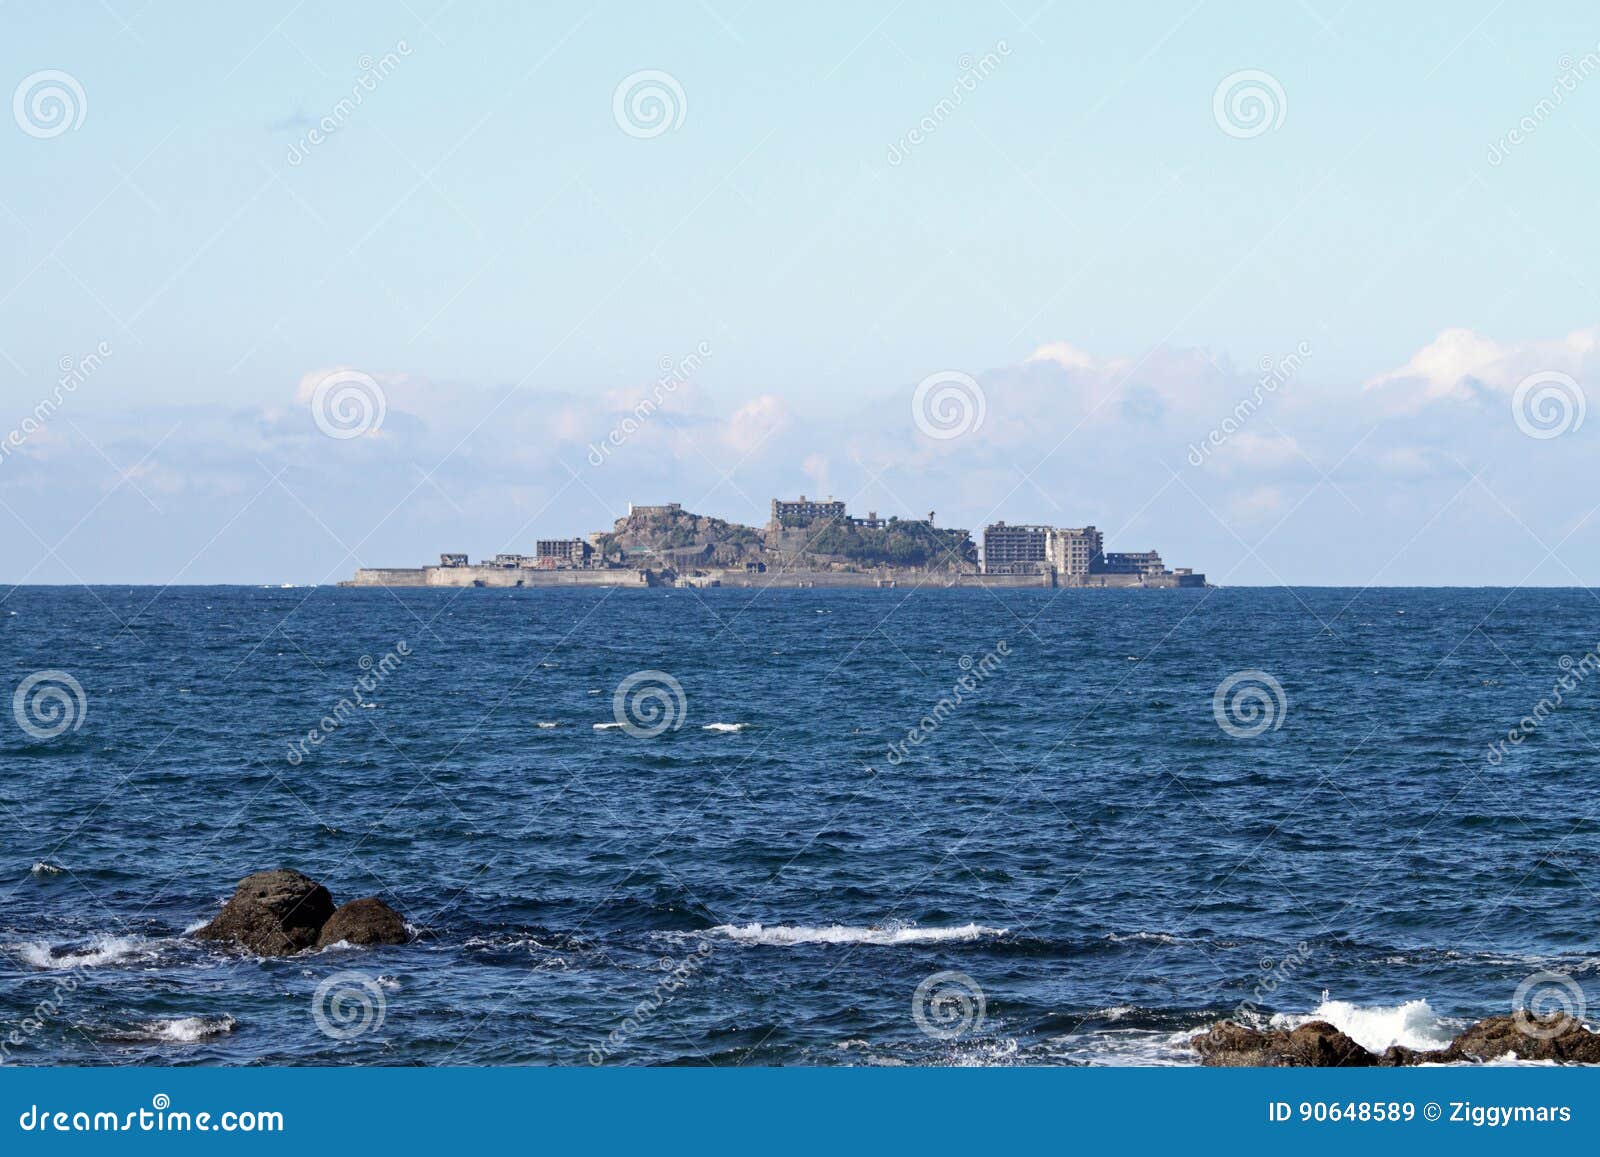 gunkan jima battleship island in nagasaki